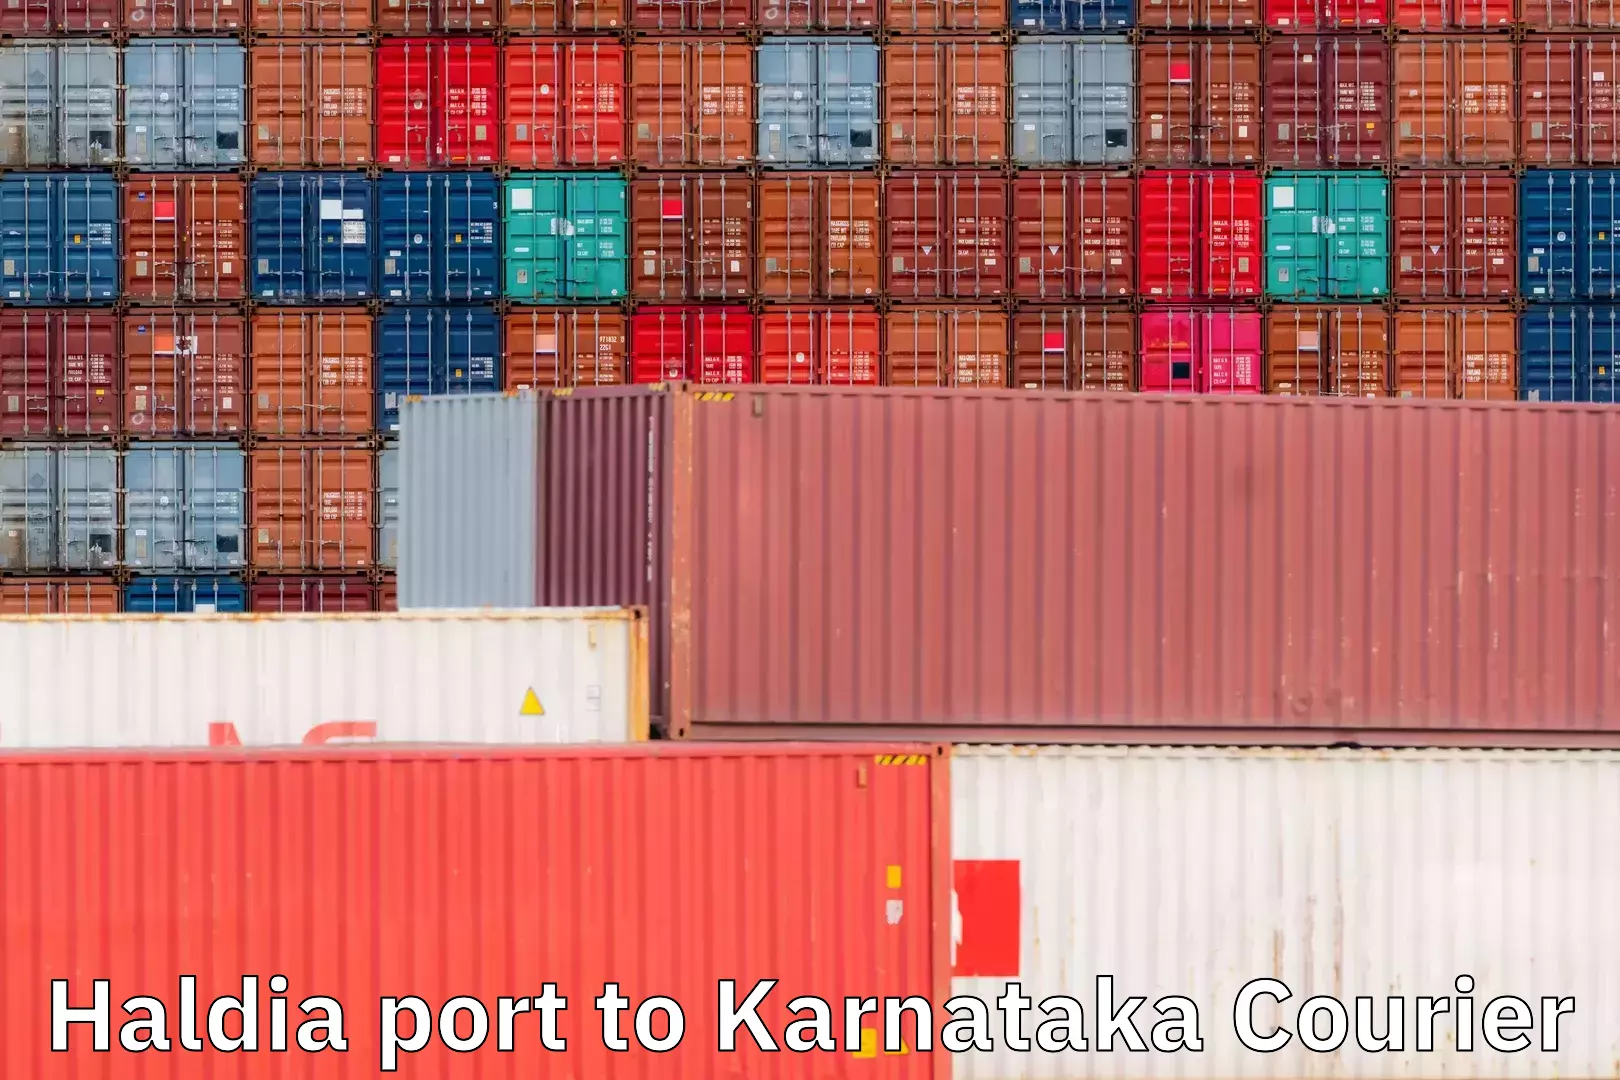 Customer-centric shipping Haldia port to Karnataka